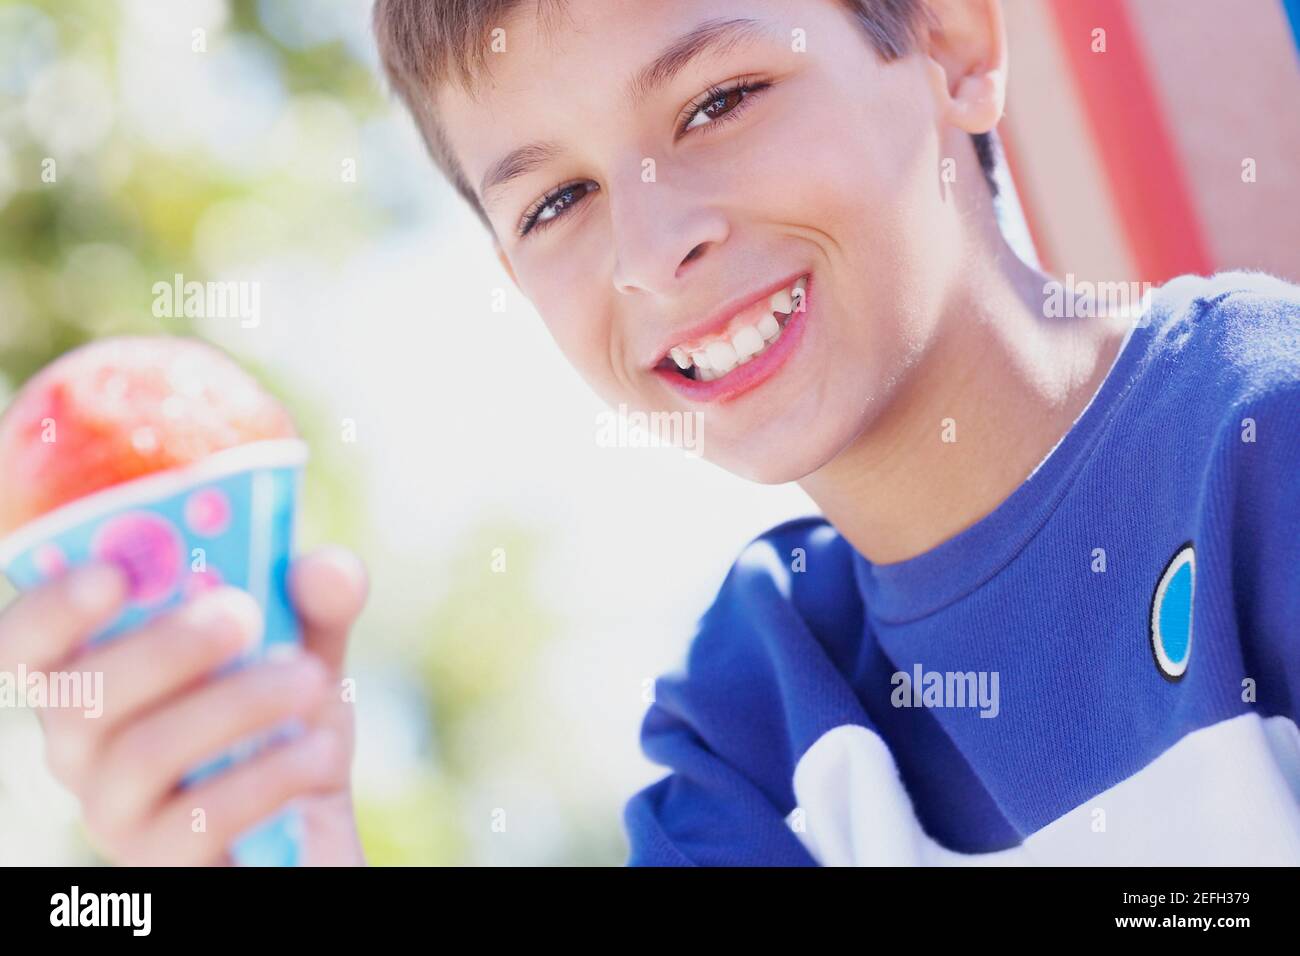 Retrato de un adolescente sonriendo y sosteniendo un helado cono Foto de stock